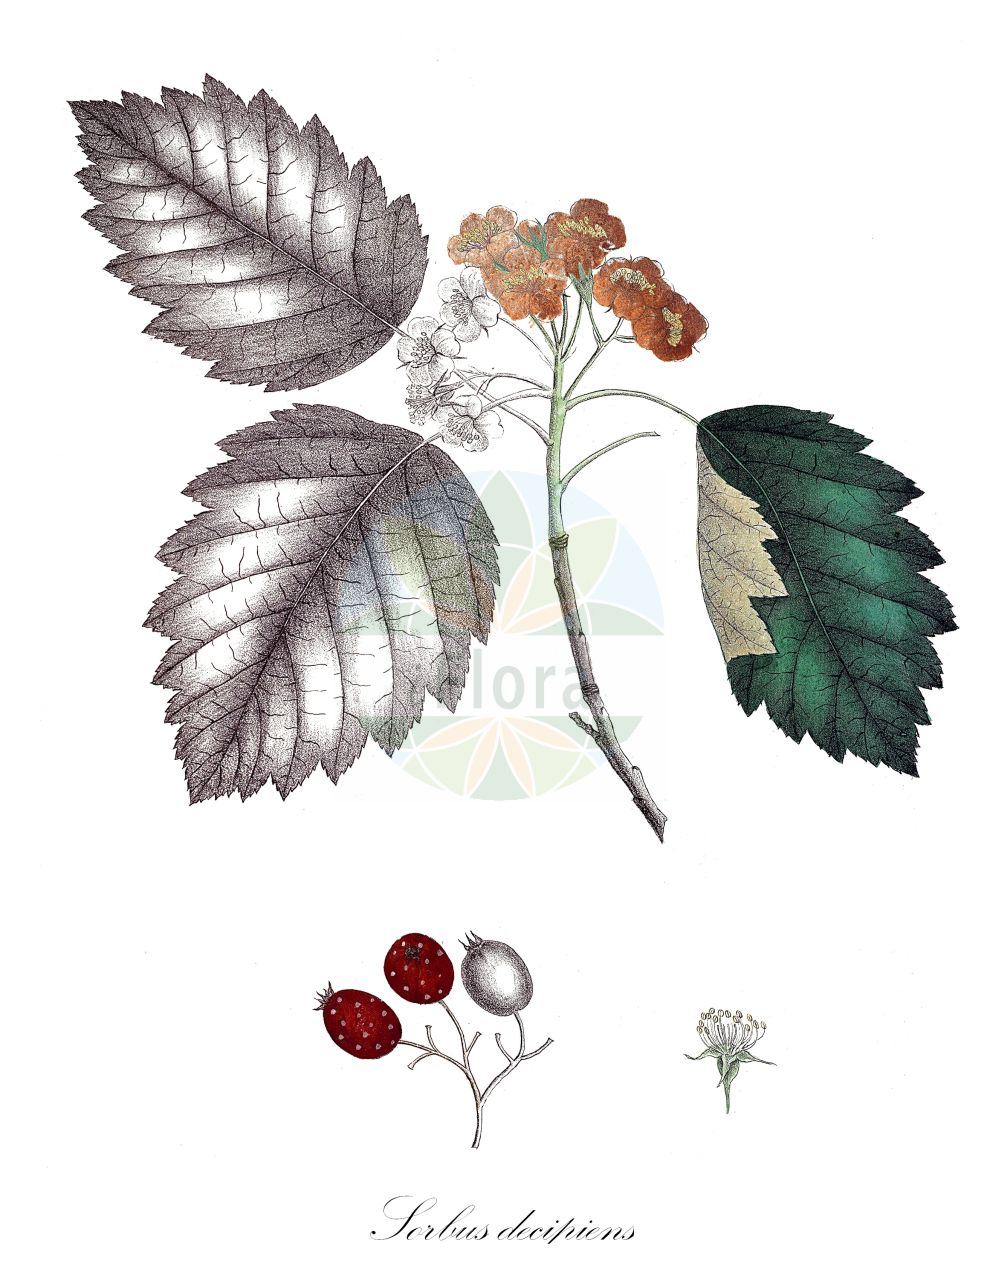 Historische Abbildung von Sorbus decipiens (Täuschende Bastard-Mehlbeere - Sharp-toothed Whitebeam). Das Bild zeigt Blatt, Bluete, Frucht und Same. ---- Historical Drawing of Sorbus decipiens (Täuschende Bastard-Mehlbeere - Sharp-toothed Whitebeam). The image is showing leaf, flower, fruit and seed.(Sorbus decipiens,Täuschende Bastard-Mehlbeere,Sharp-toothed Whitebeam,Pyrus decipiens,Sorbus decipiens,Taeuschende Bastard-Mehlbeere,Sharp-toothed Whitebeam,Sorbus,Vogelbeere,White Beam,Rosaceae,Rosengewächse,Rose family,Blatt,Bluete,Frucht,Same,leaf,flower,fruit,seed,Krebs (1826-1832))